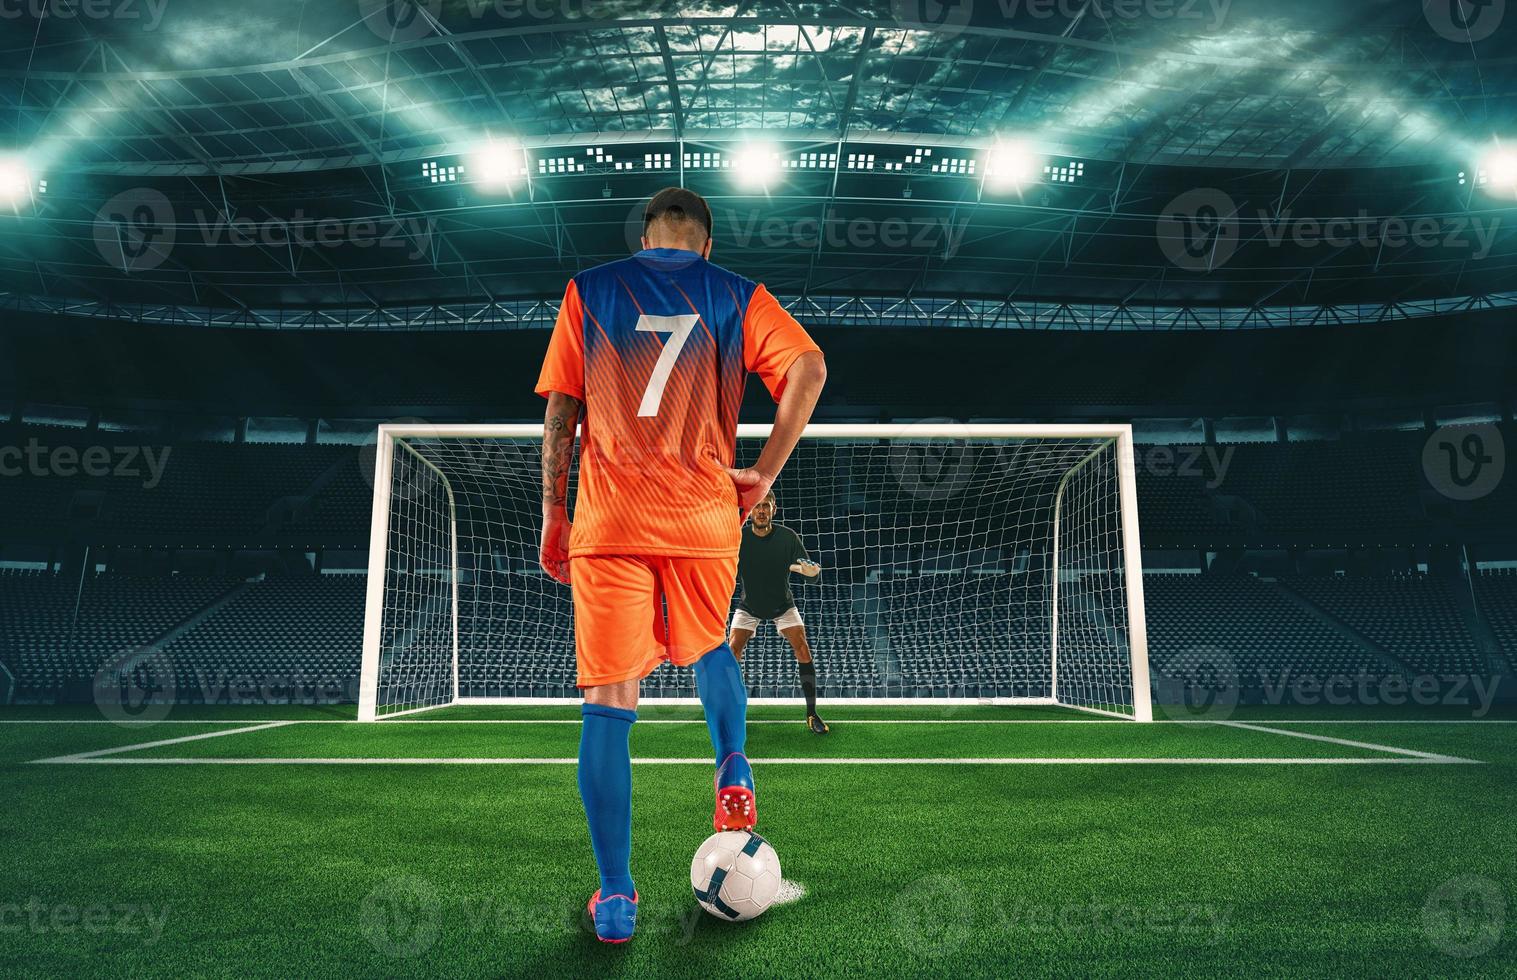 Fußball Szene beim Nacht Spiel mit Spieler im Orange Uniform treten das Strafe trete foto